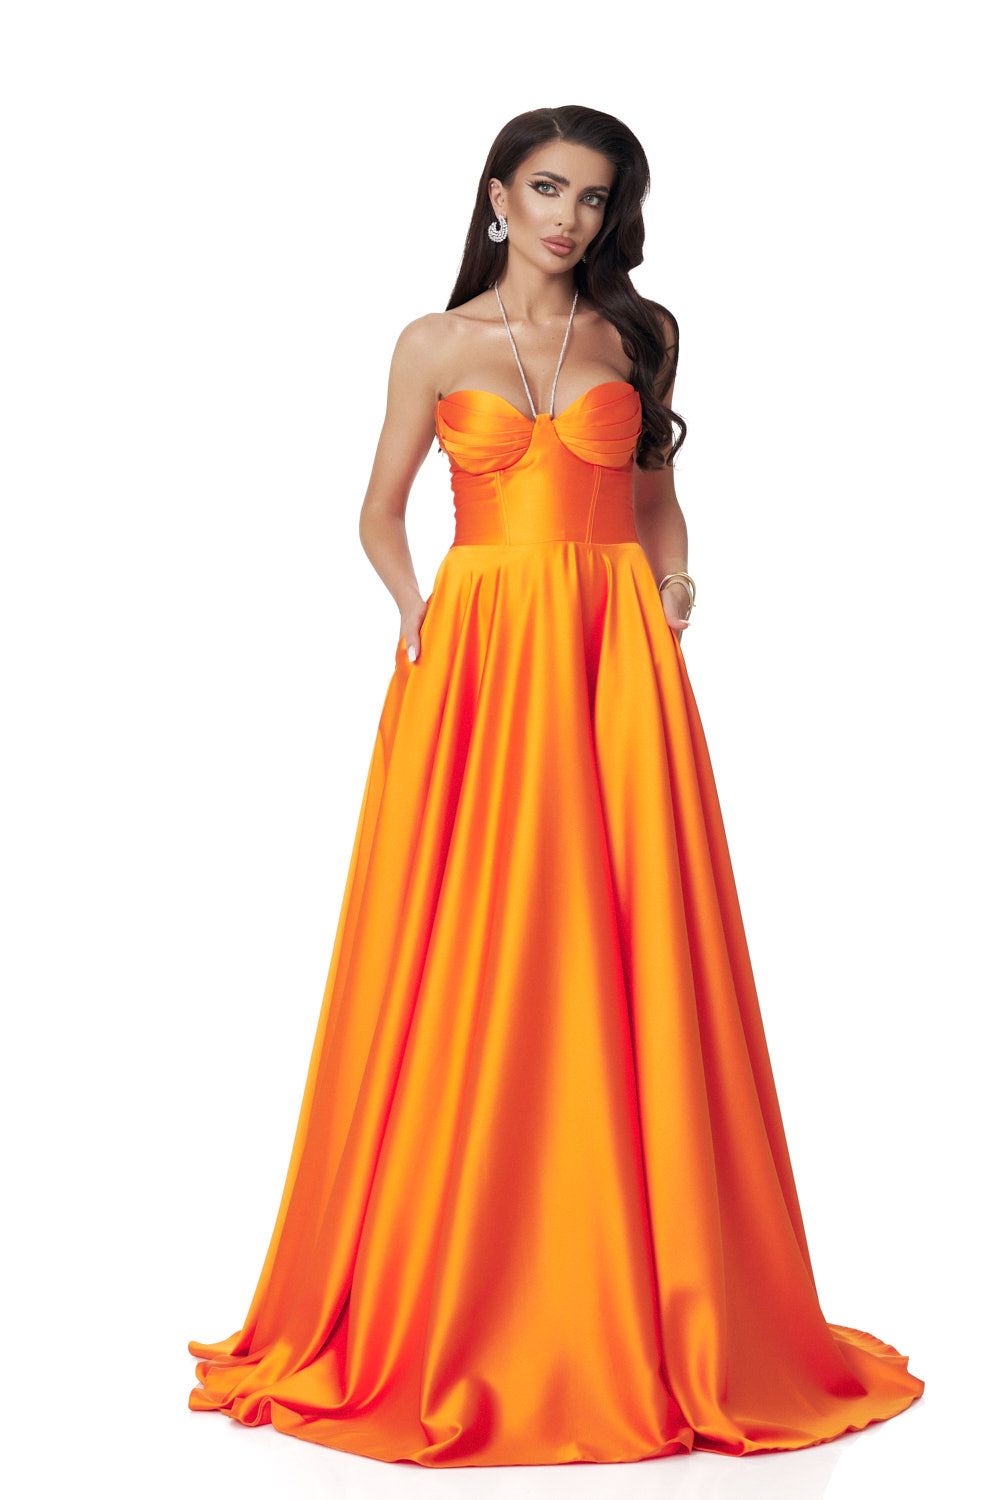 Nayeli Bogas hosszú narancssárga taft női ruha